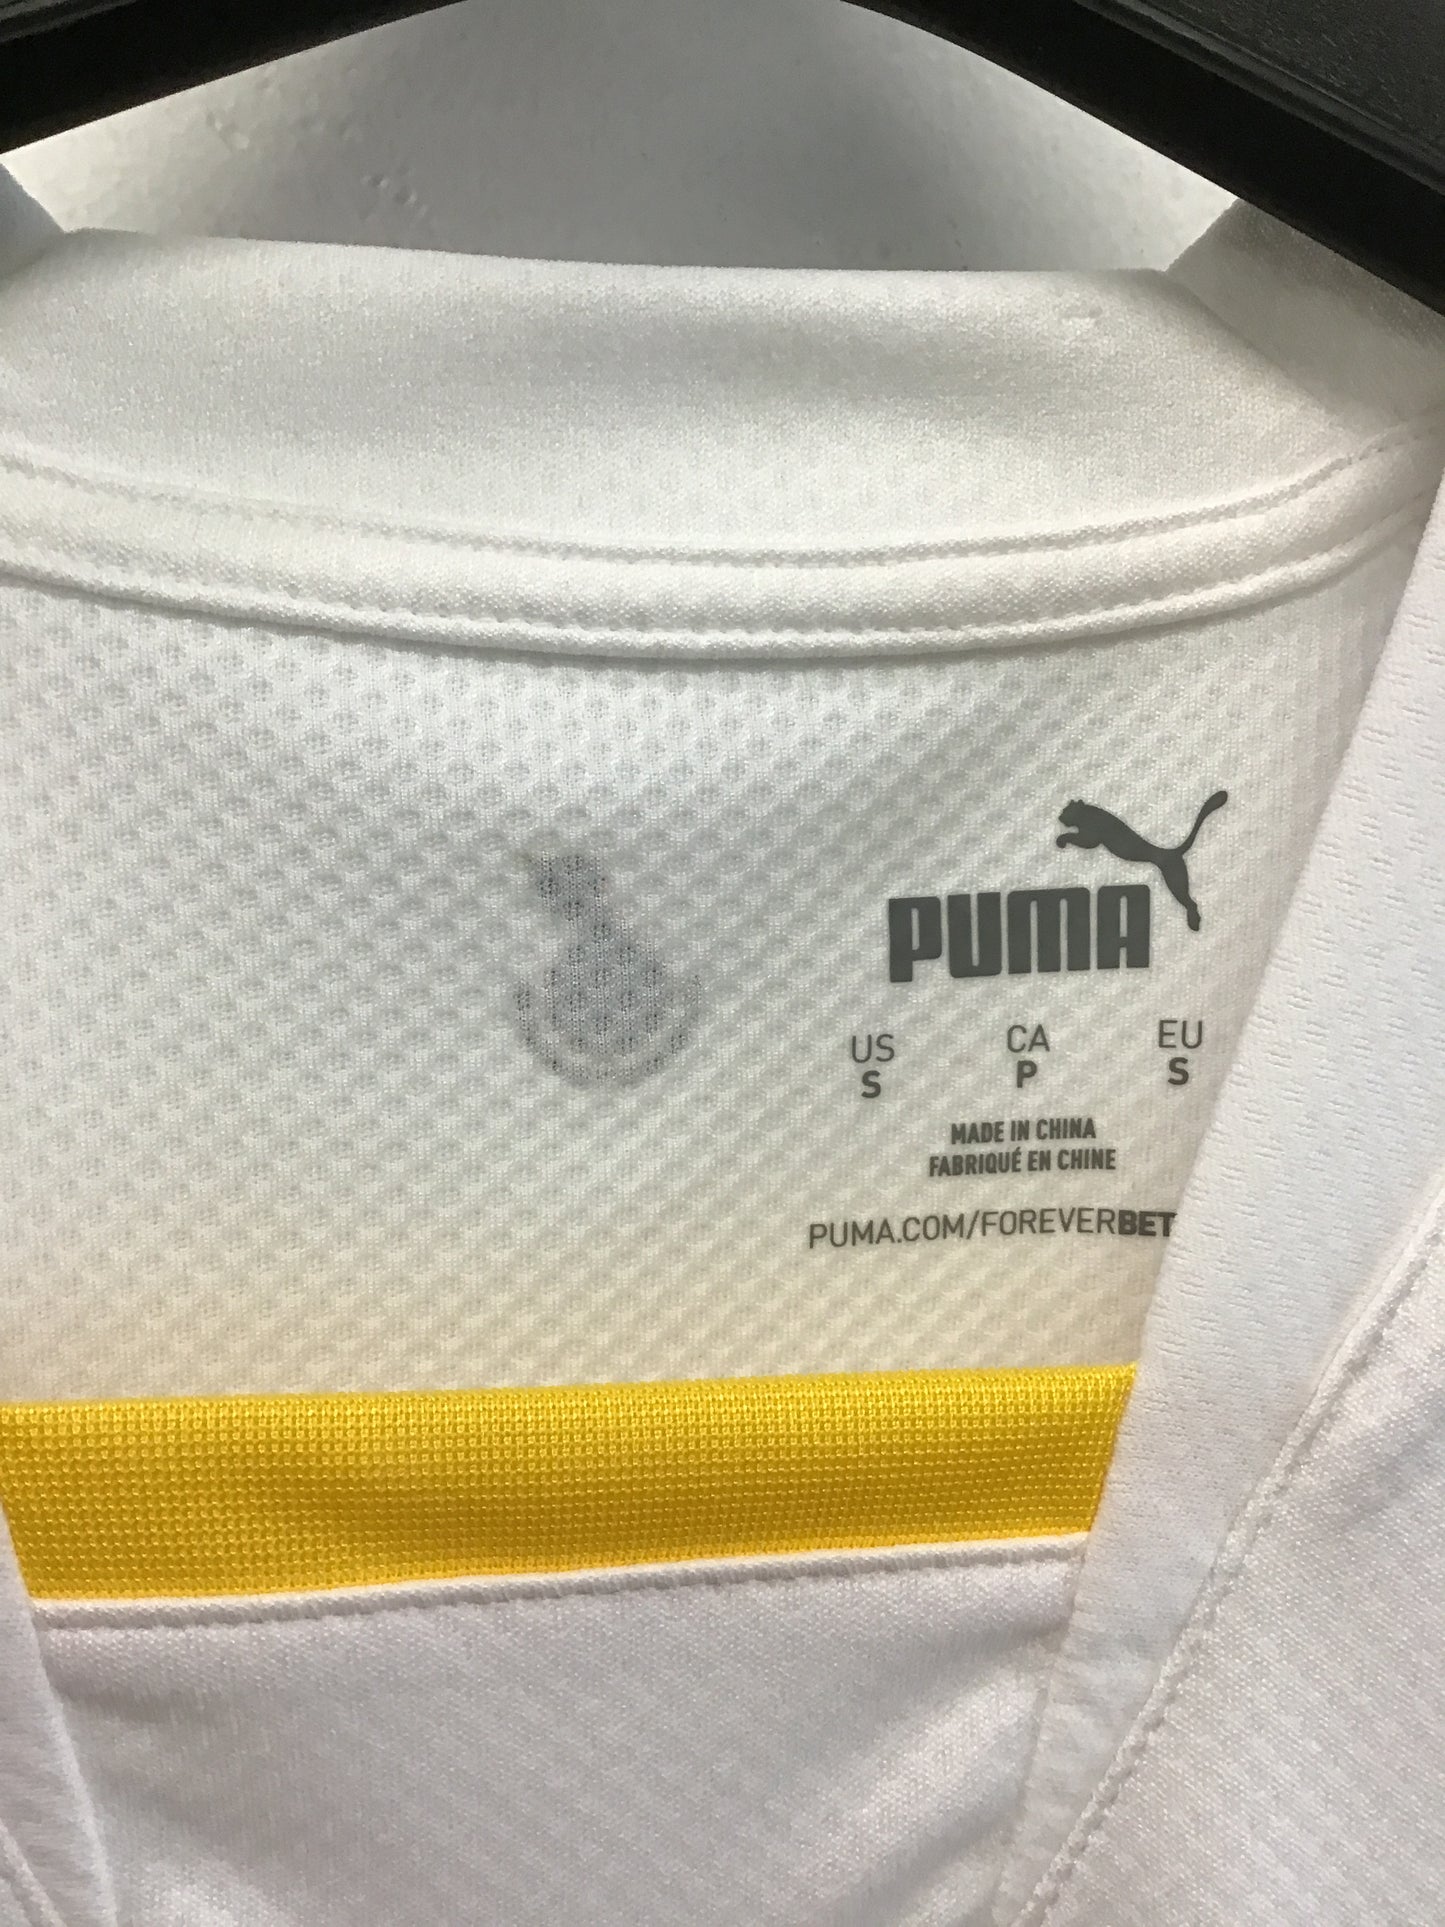 Puma Ghana Football Association Jersey, Size S